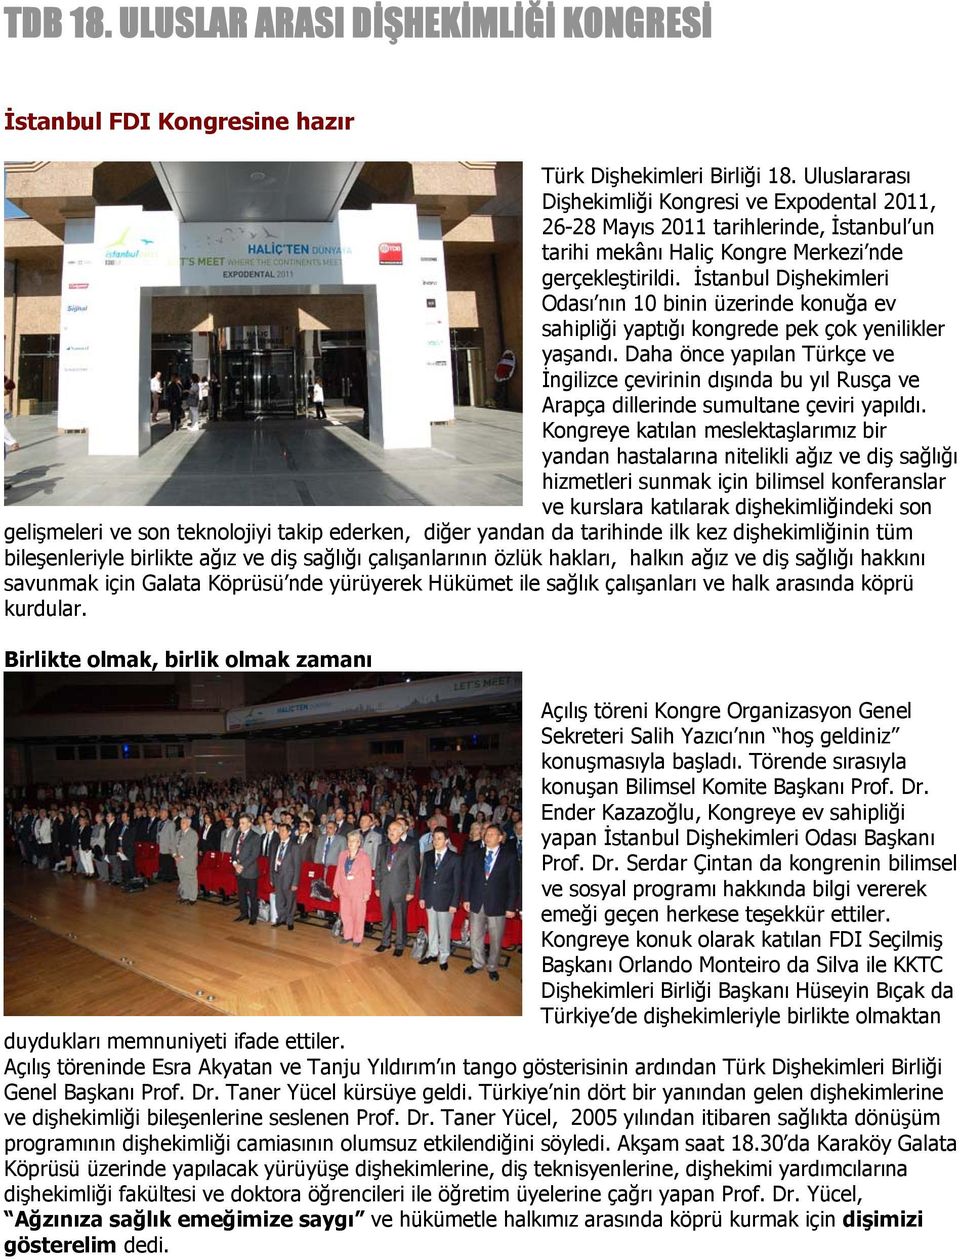 İstanbul Dişhekimleri Odası nın 10 binin üzerinde konuğa ev sahipliği yaptığı kongrede pek çok yenilikler yaşandı.